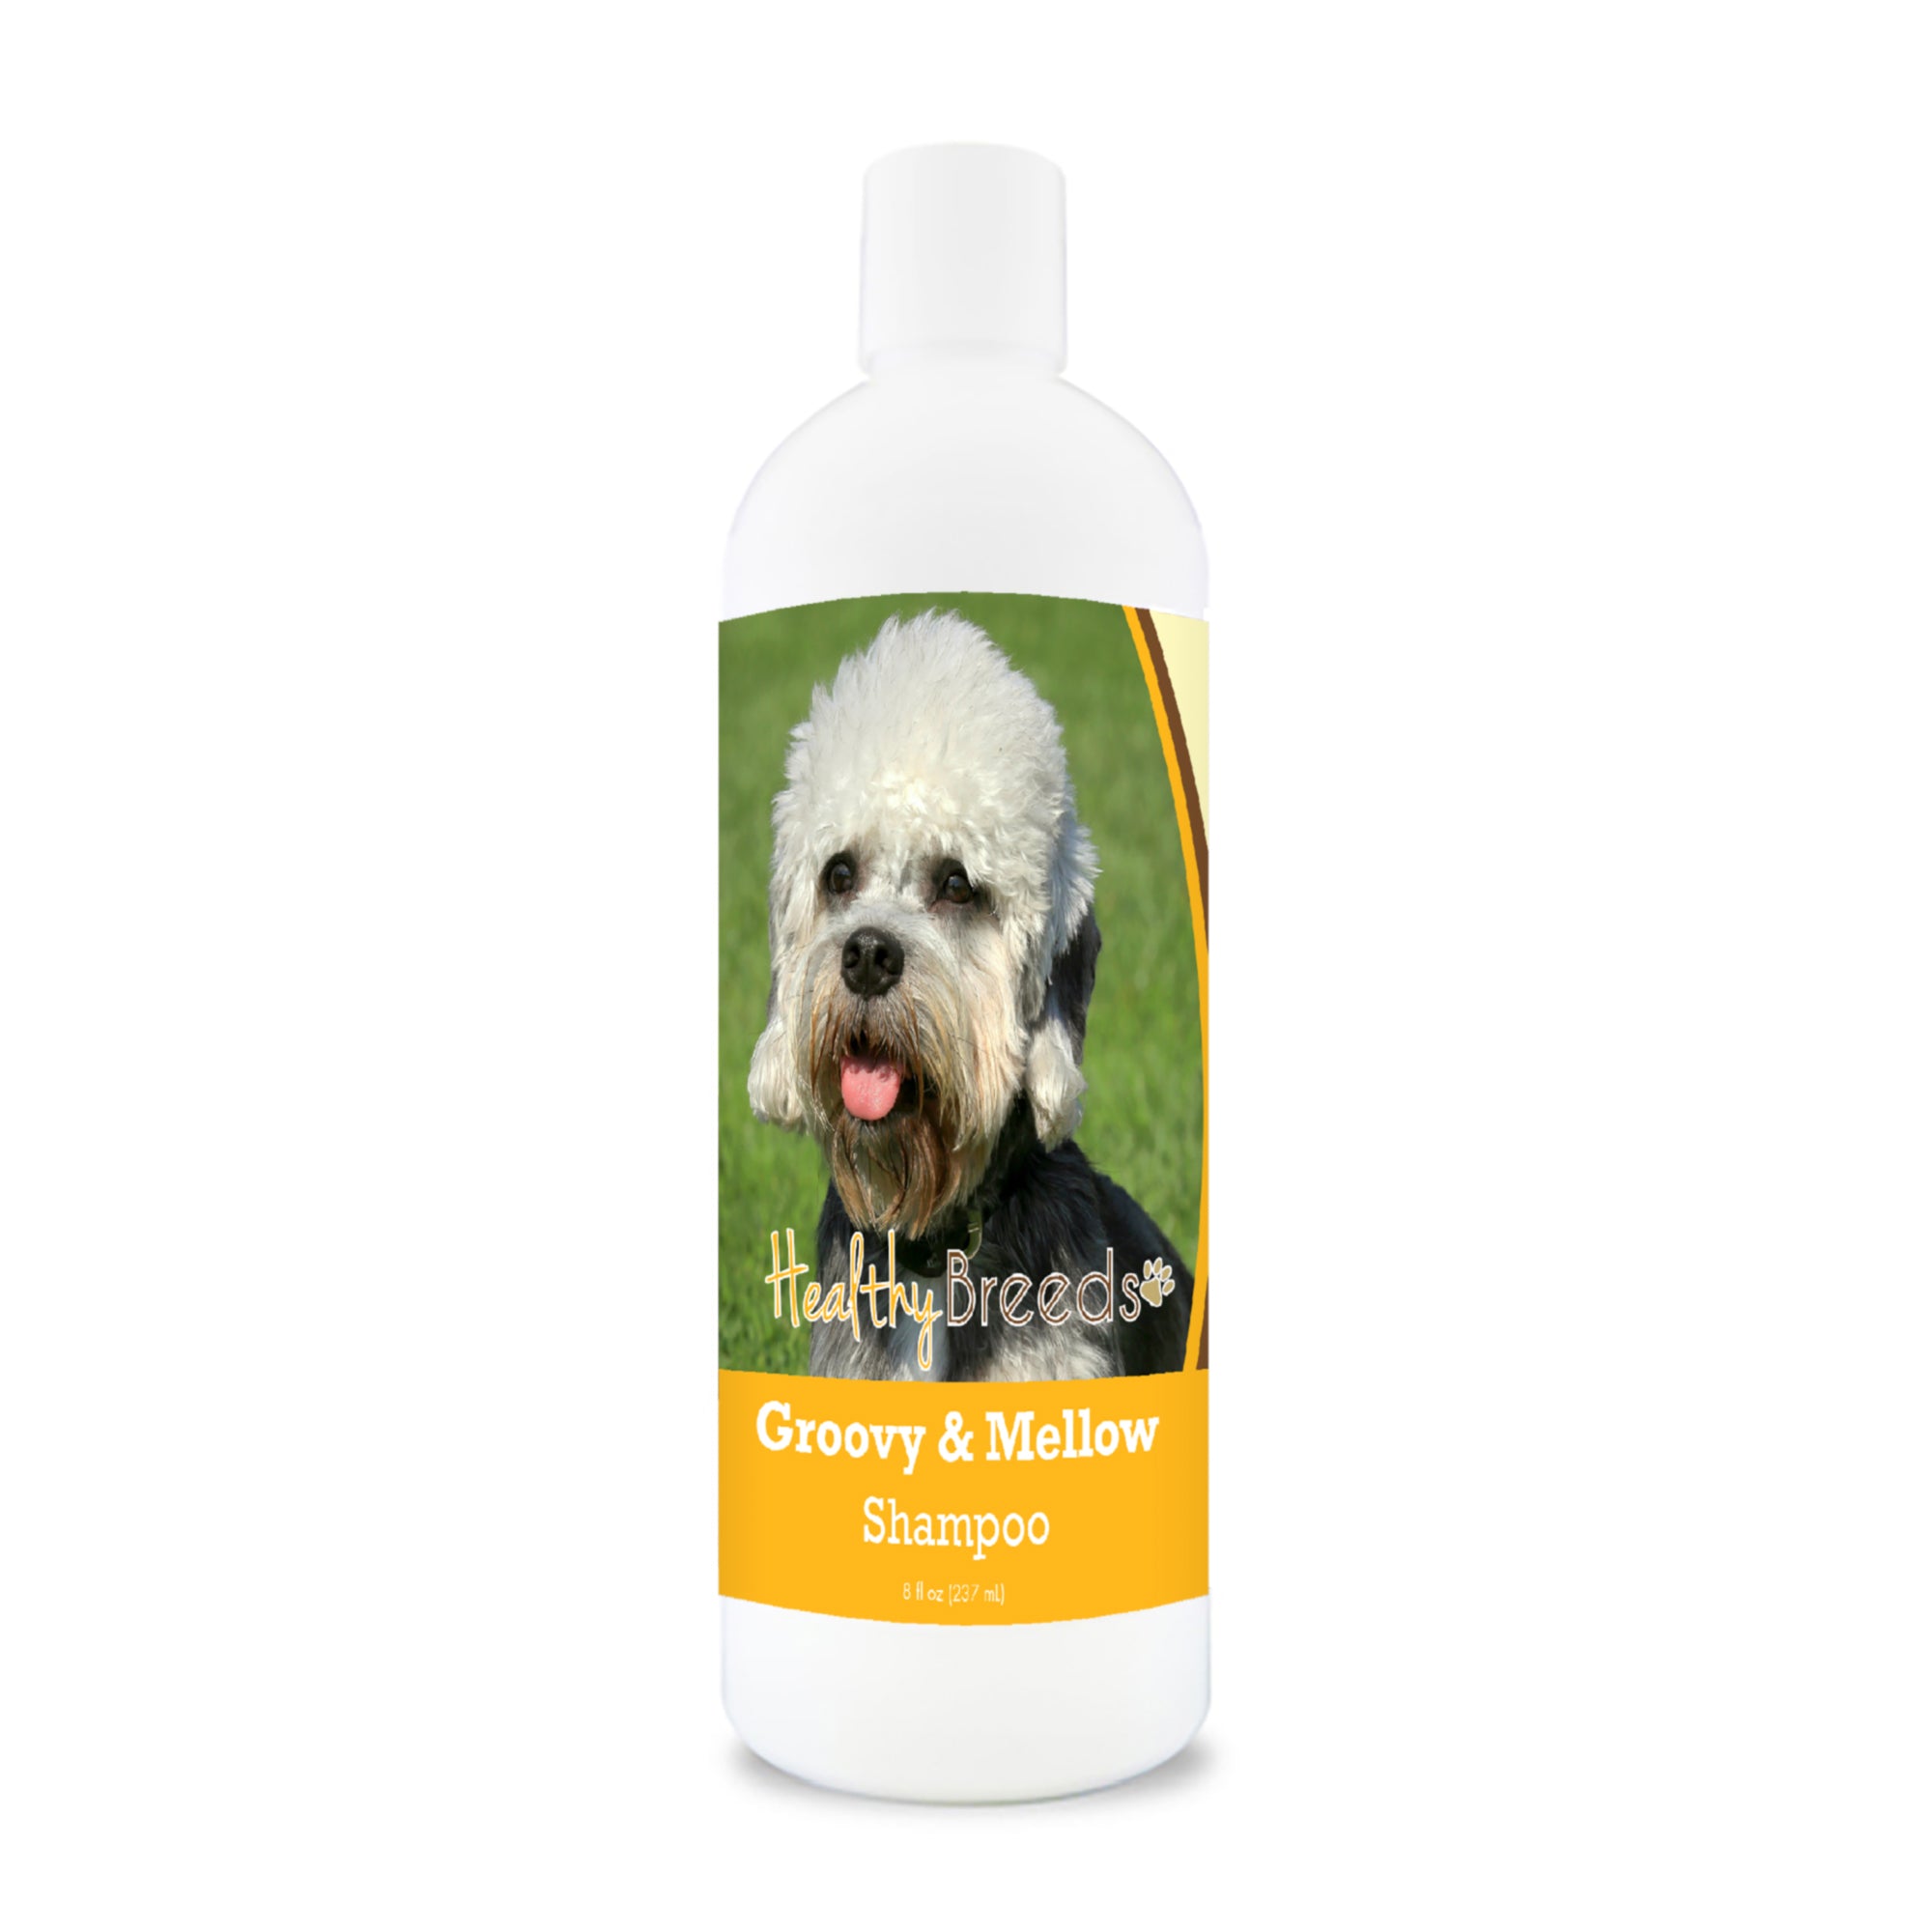 Dandie Dinmont Terrier Groovy & Mellow Shampoo 8 oz